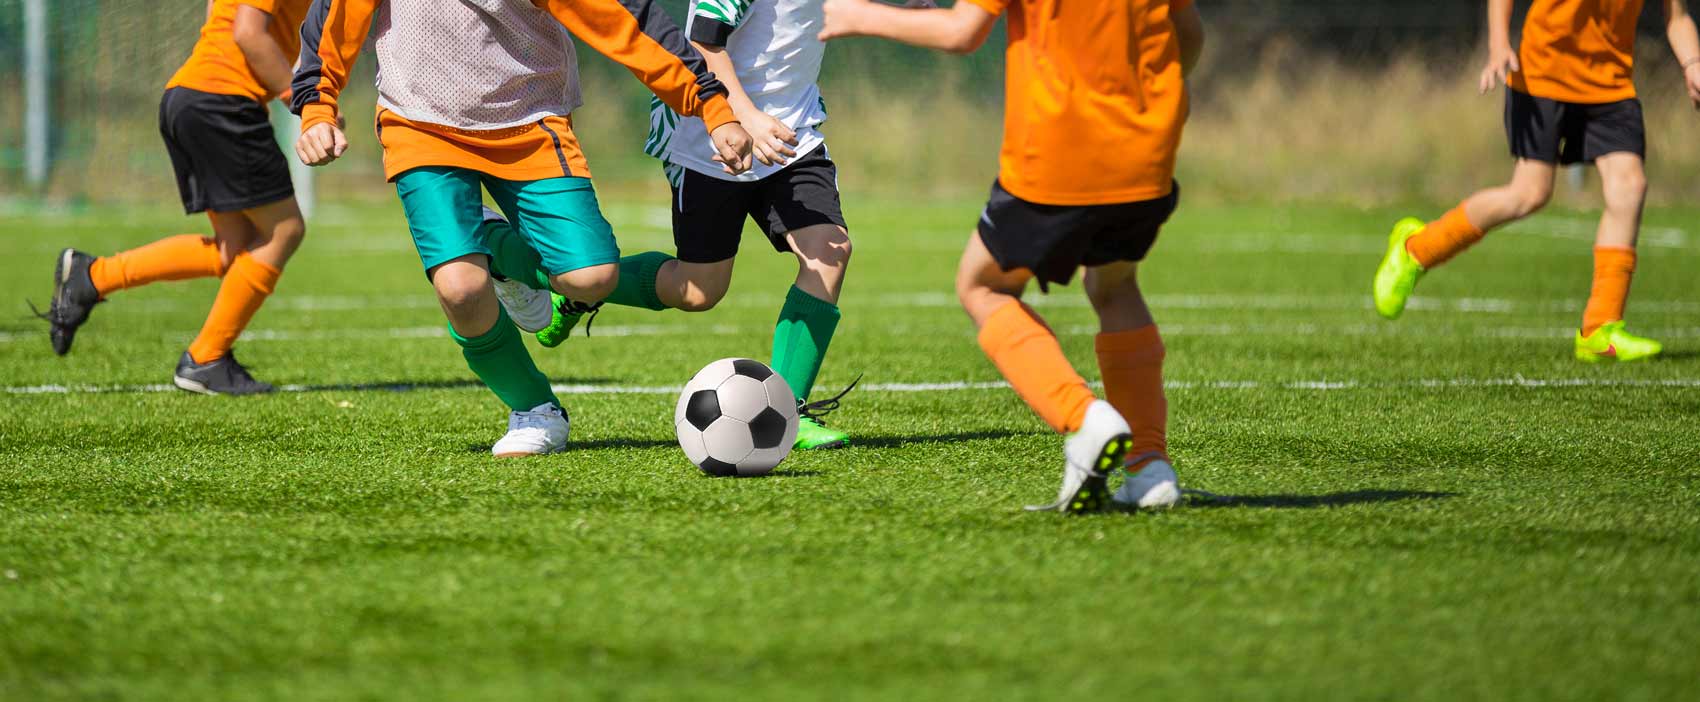 artificial-grass-soccer-field-for-kids